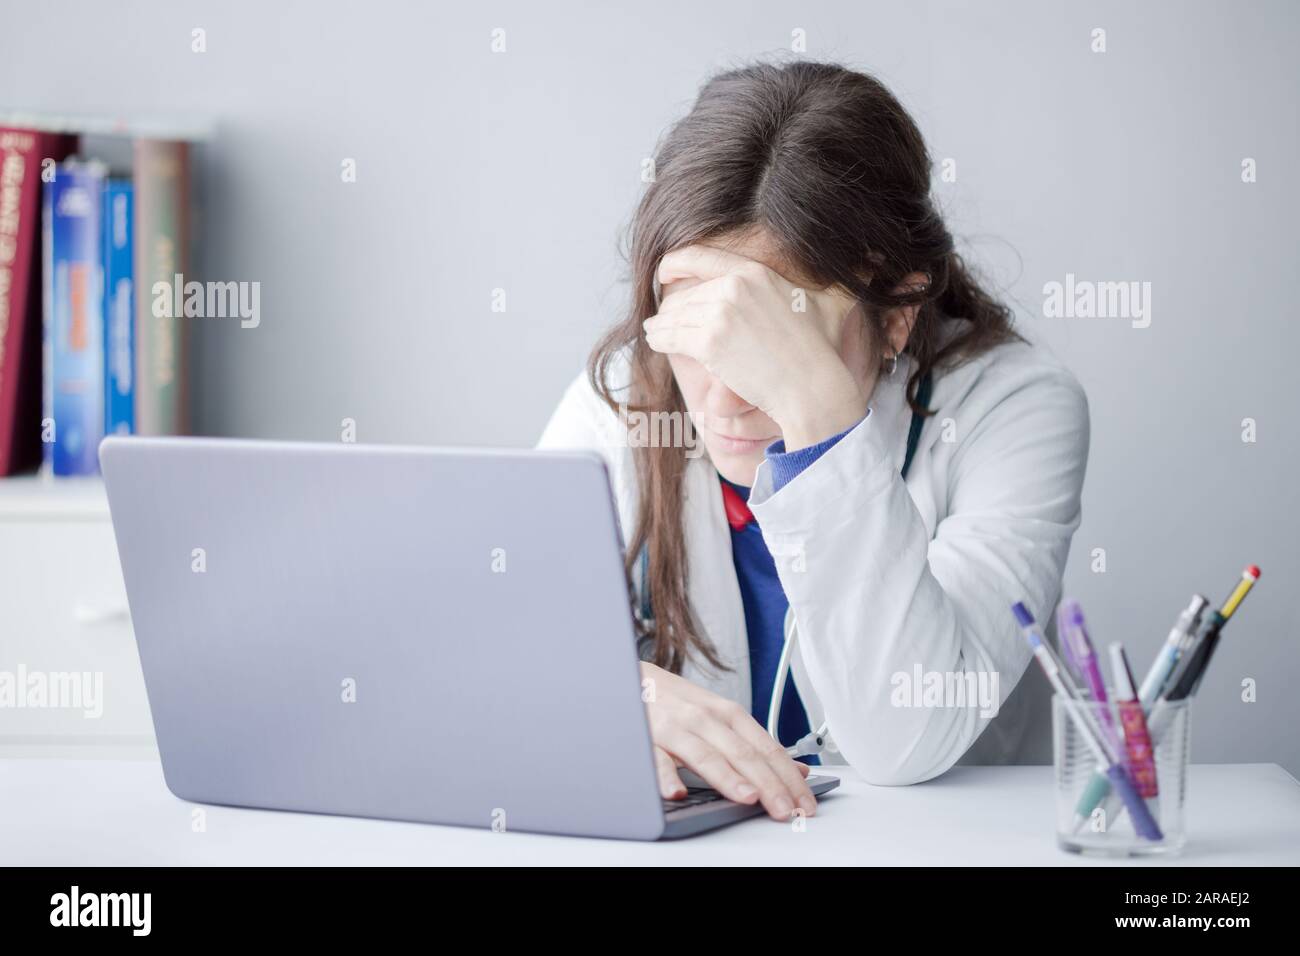 Mujer joven cansada Doctor trabajar con un ordenador portátil en una clínica Foto de stock